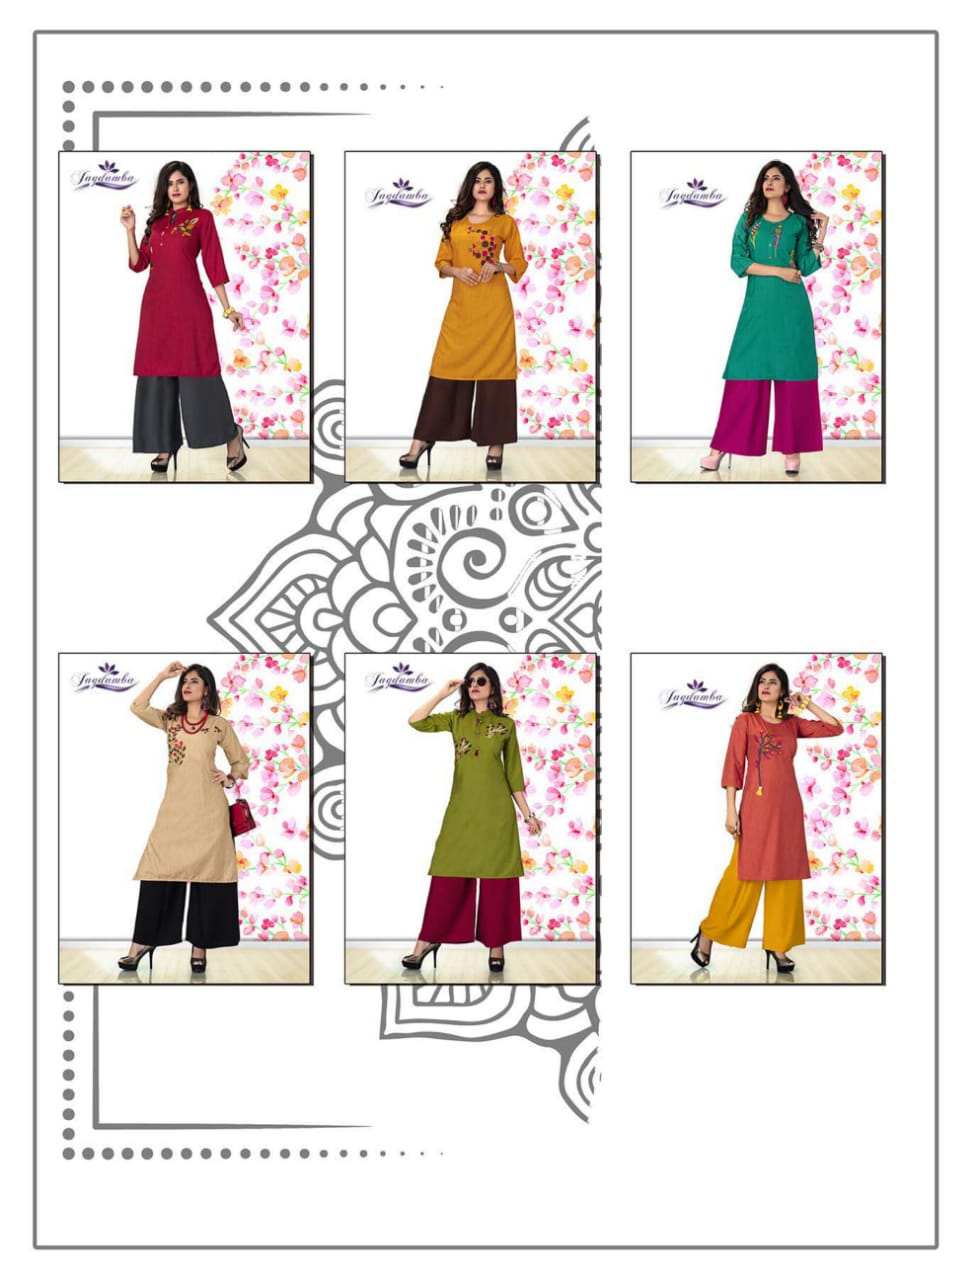 Khwaish By Jagdamba  Beautiful Stylish Fancy Colorful Party Wear & Ethnic Wear & Ready To Wear Rayon Embroidery Kurtis At Wholesale Price